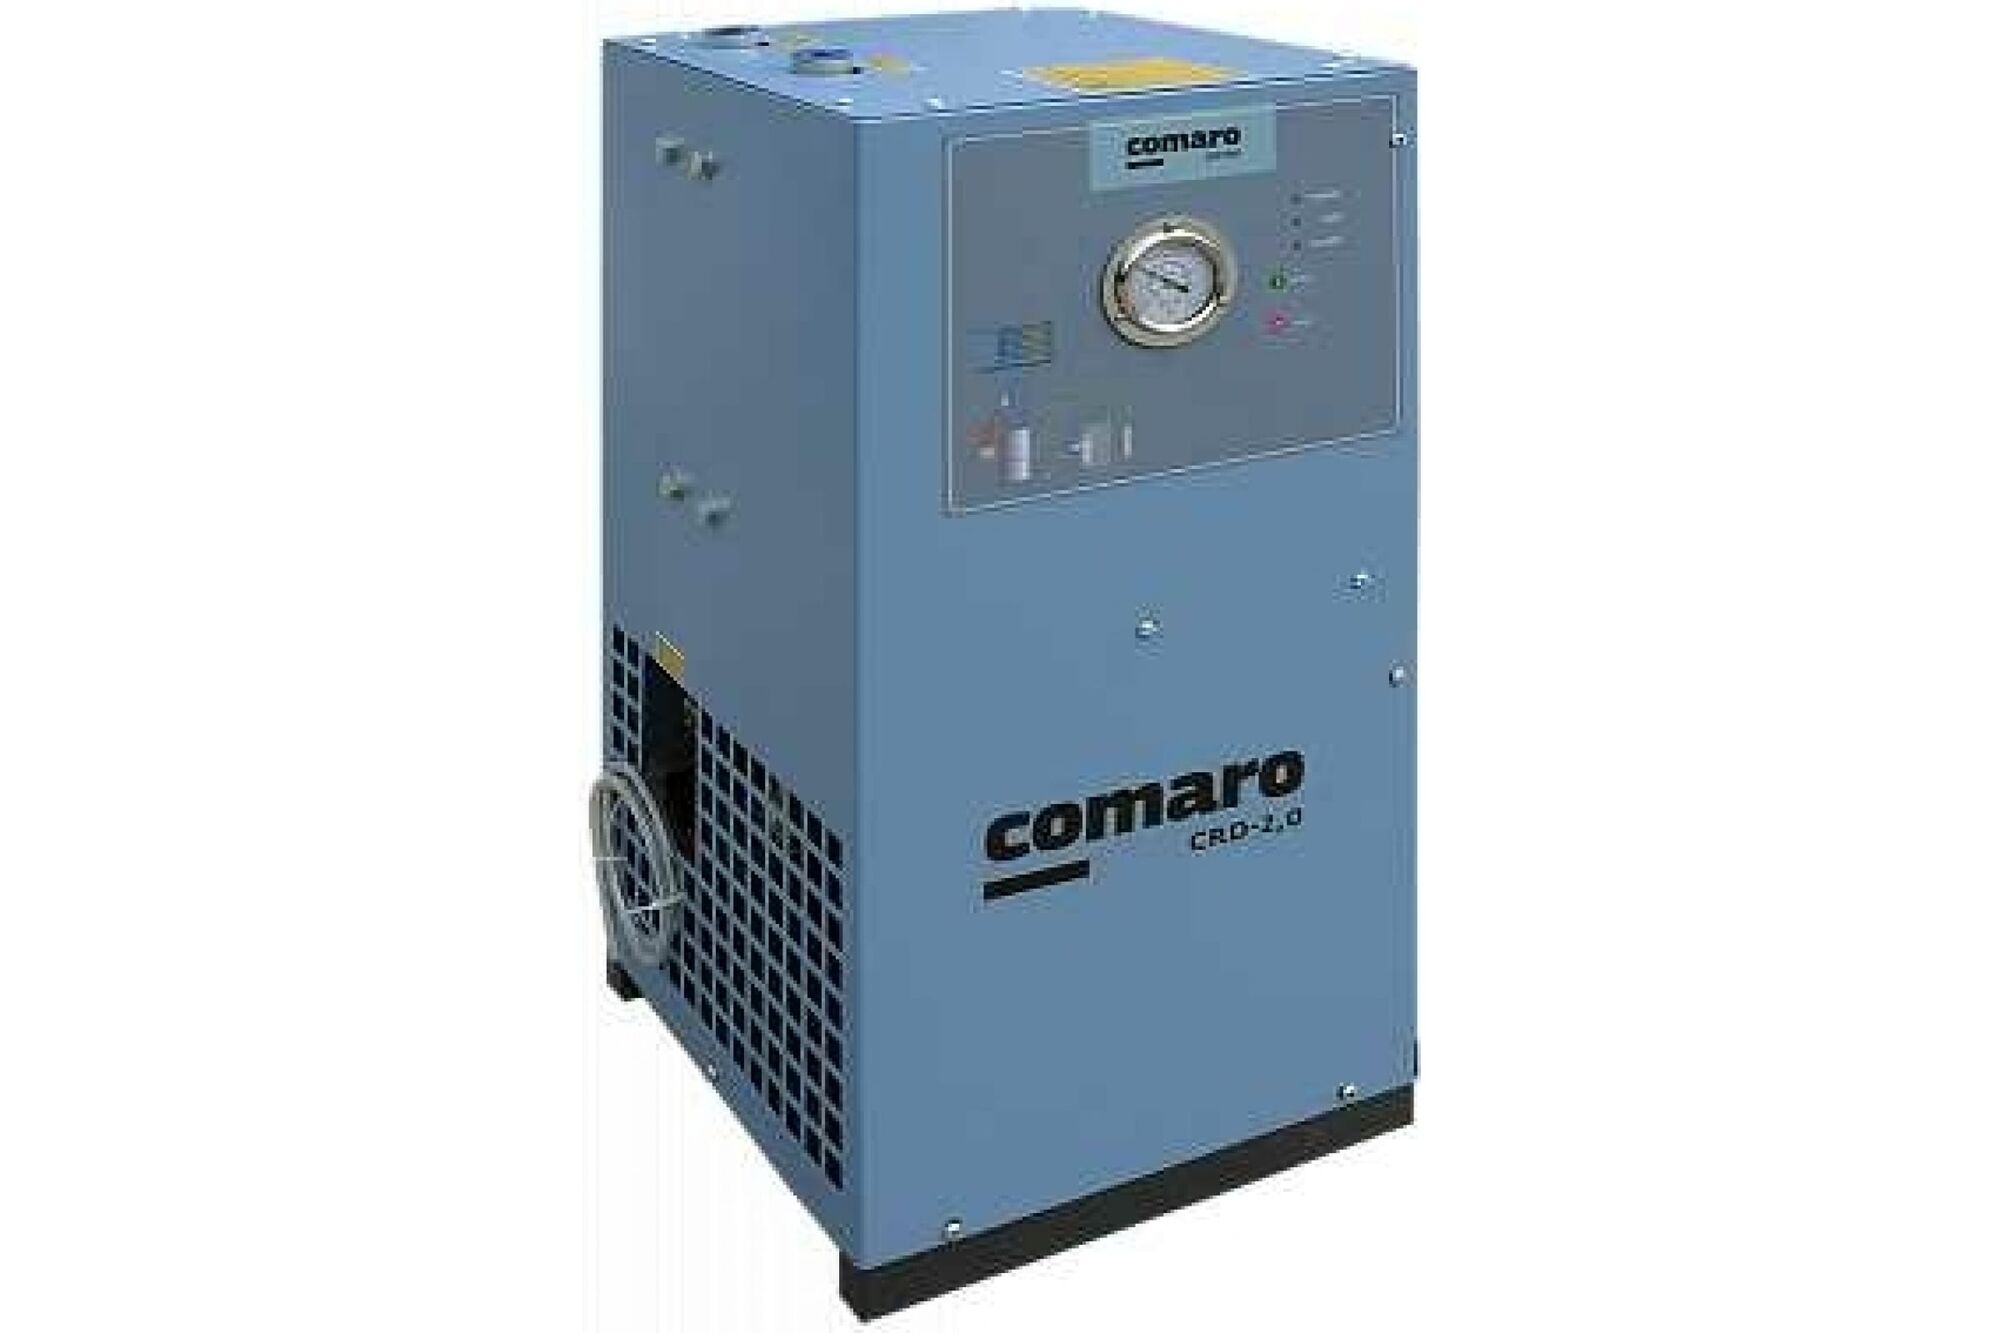 Рефрижераторный осушитель COMARO CRD-2.0 RD0020C Comaro